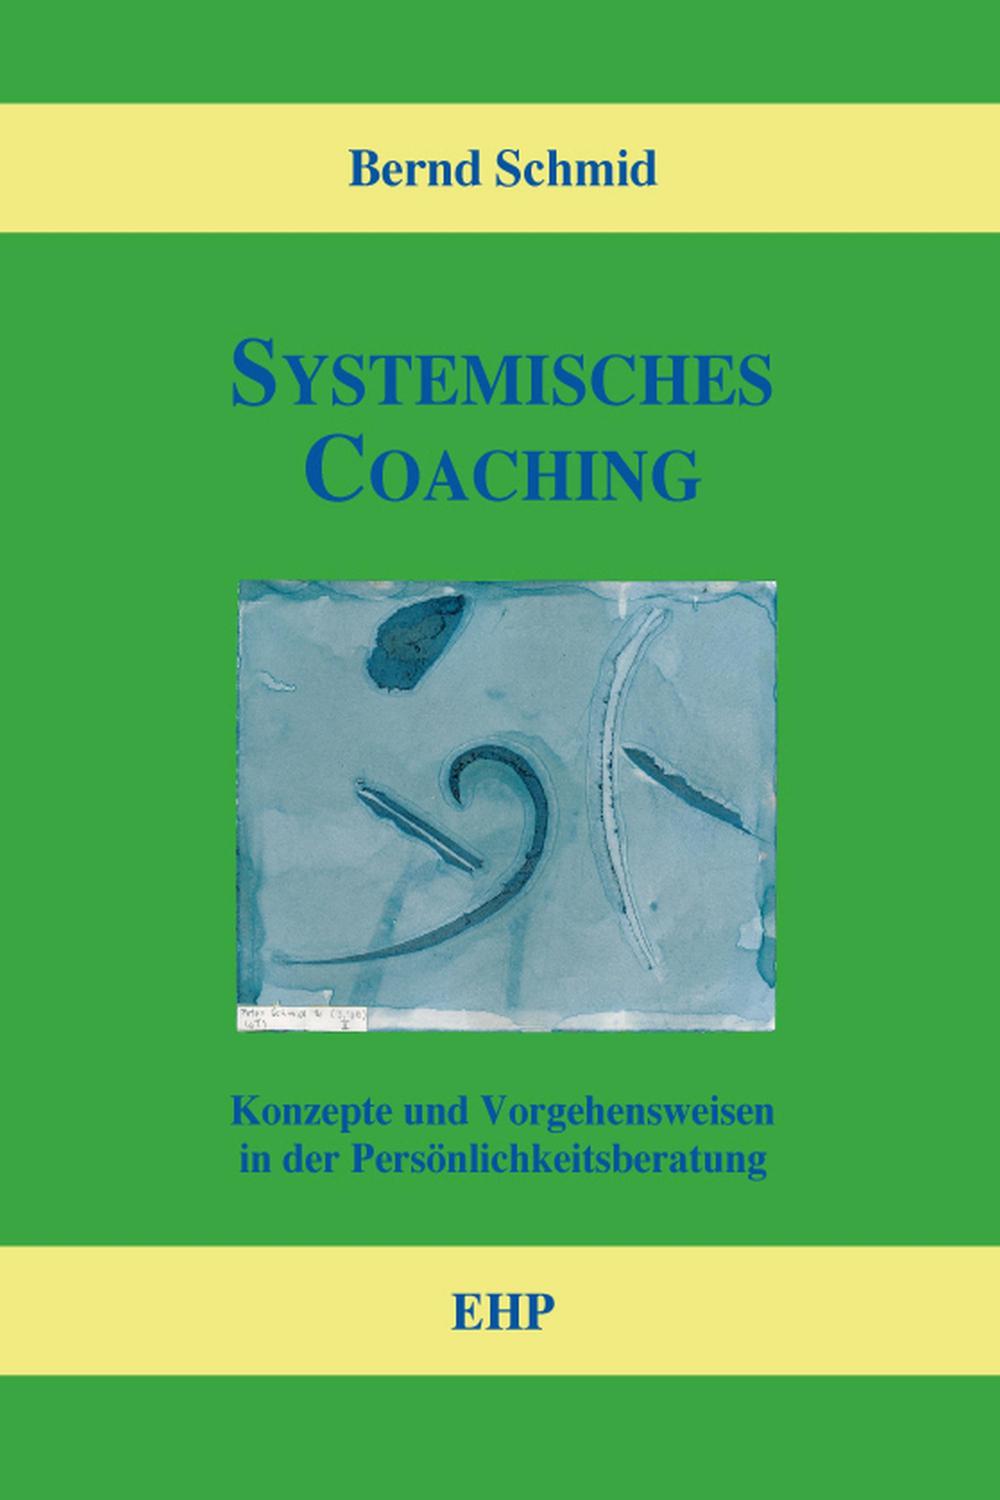 Systemisches Coaching - Bernd Schmid, Ingeborg Weidner